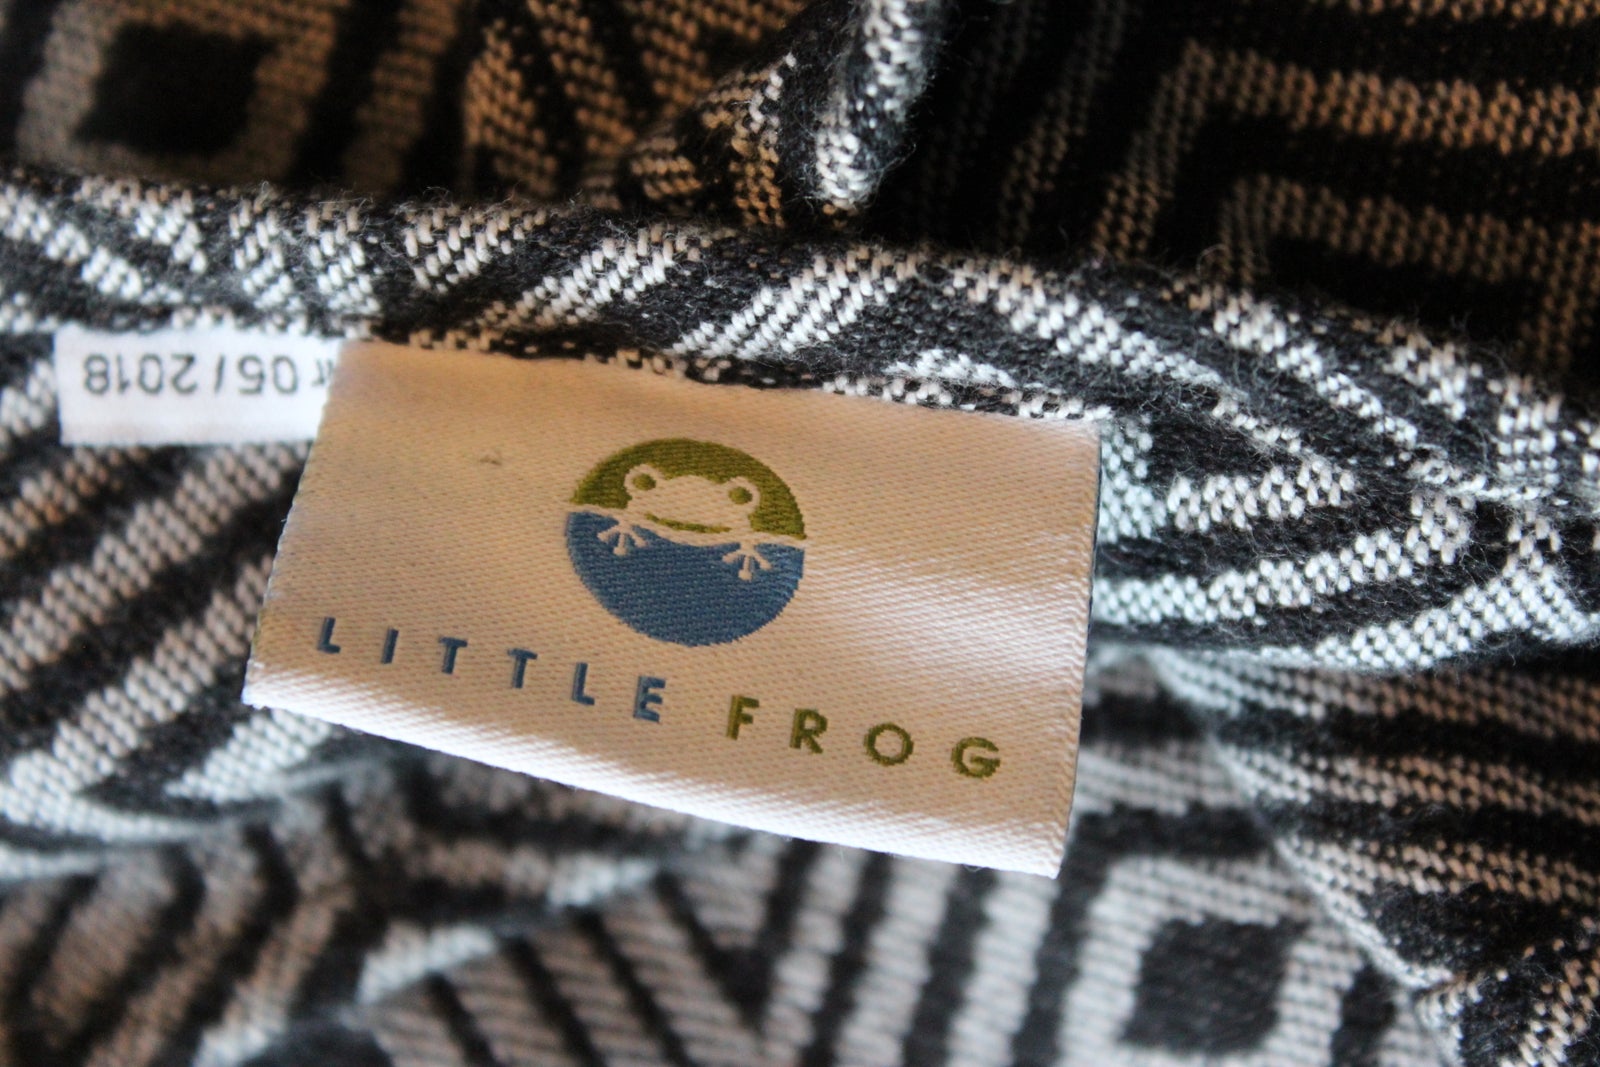 Vikle, Fastvikle, Little Frog